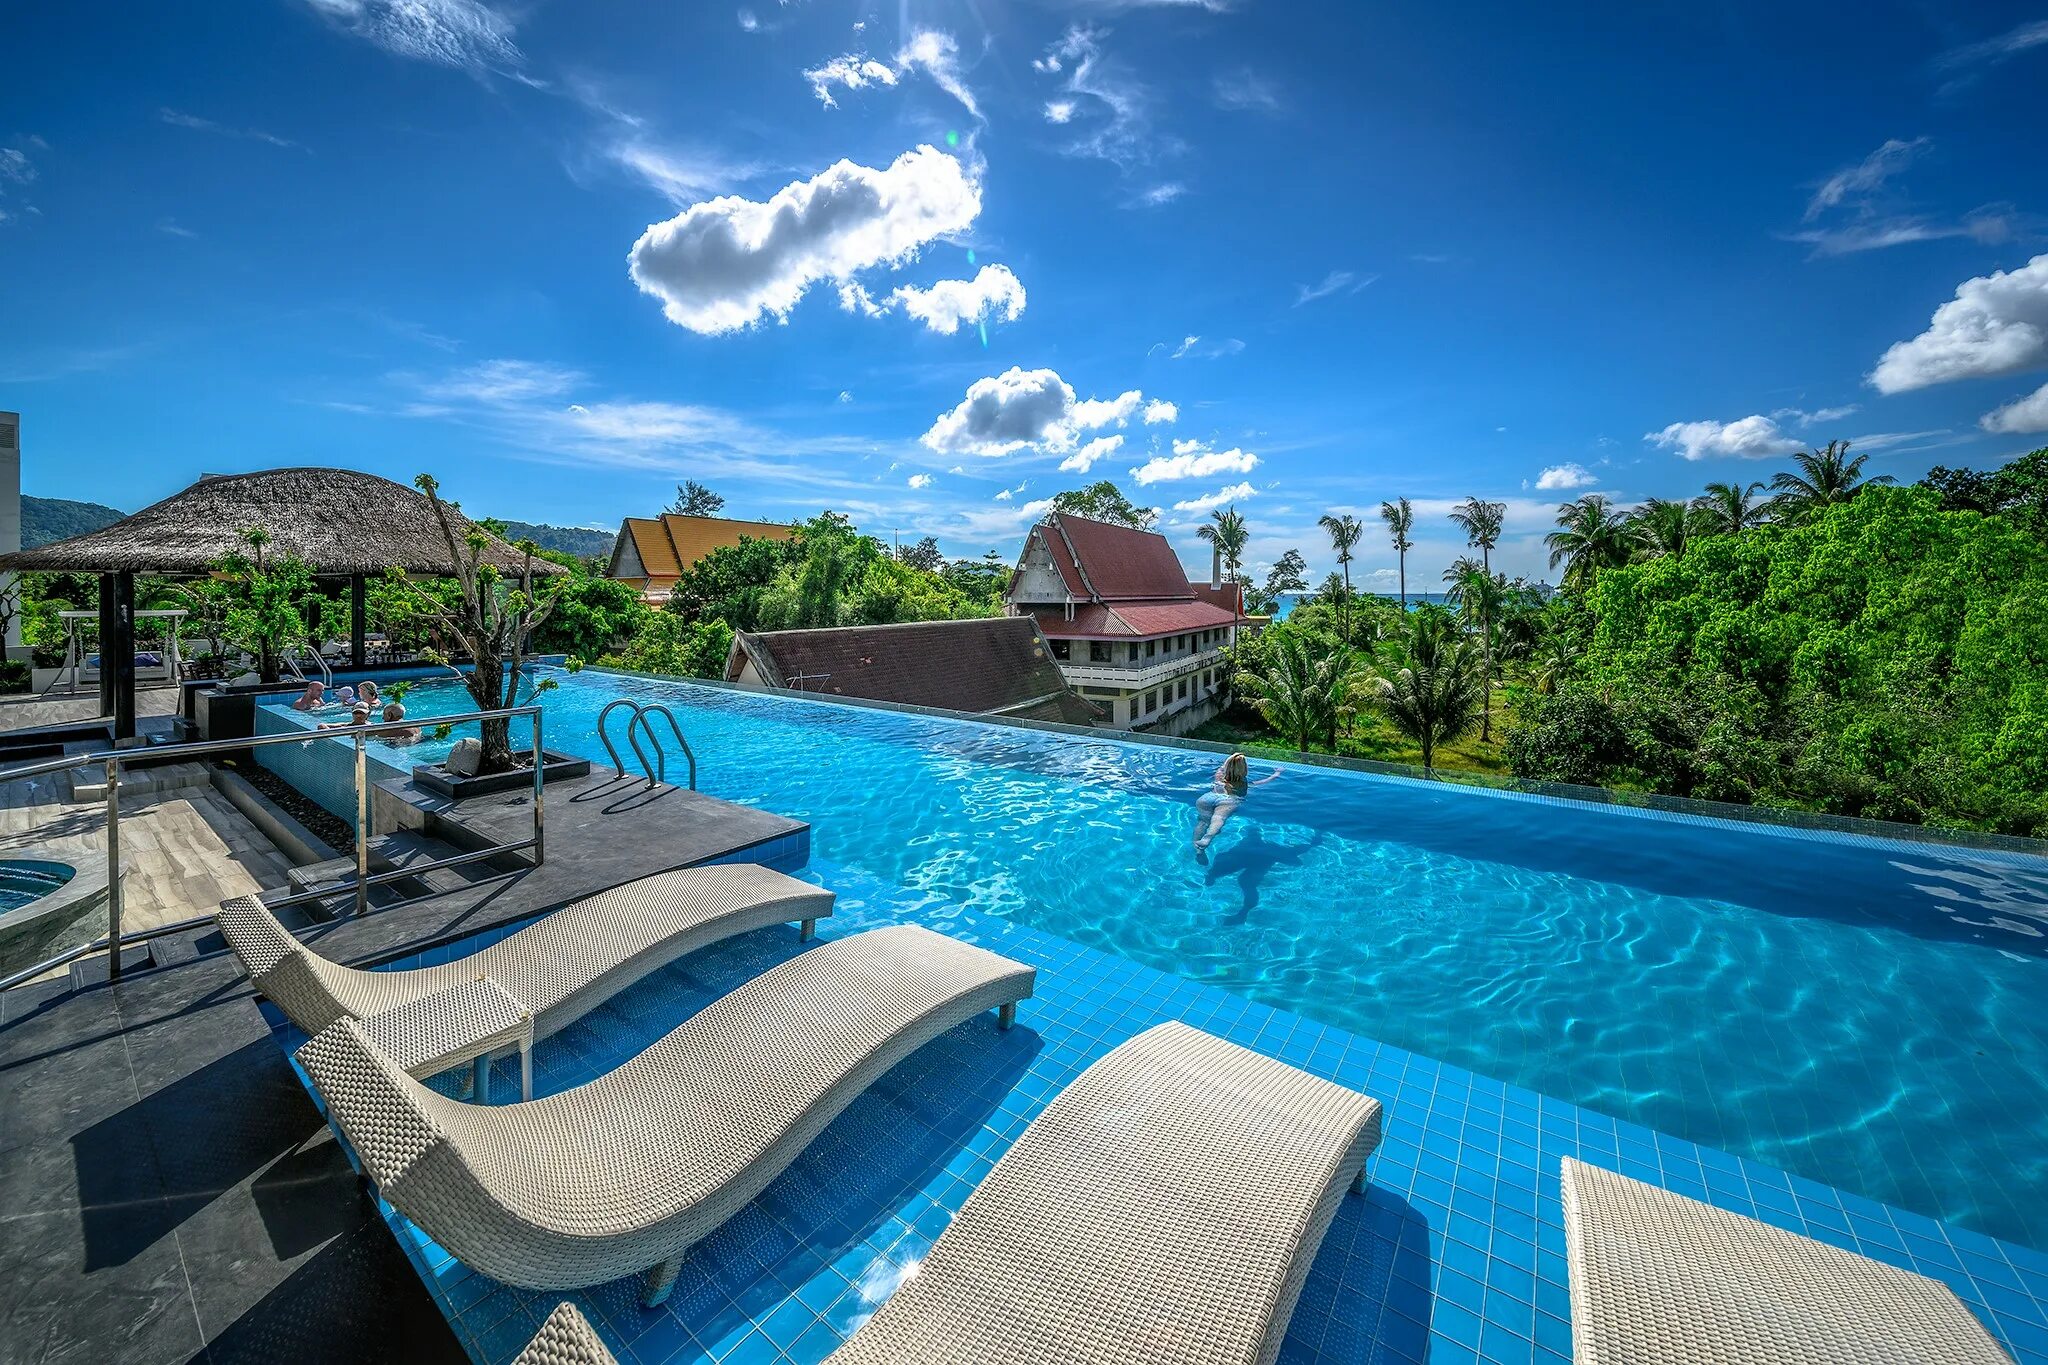 Andaman beach suites. Andaman Пхукет. Патонг Пхукет Таиланд. Андаман Бич. Отель Андаман Пхукет.